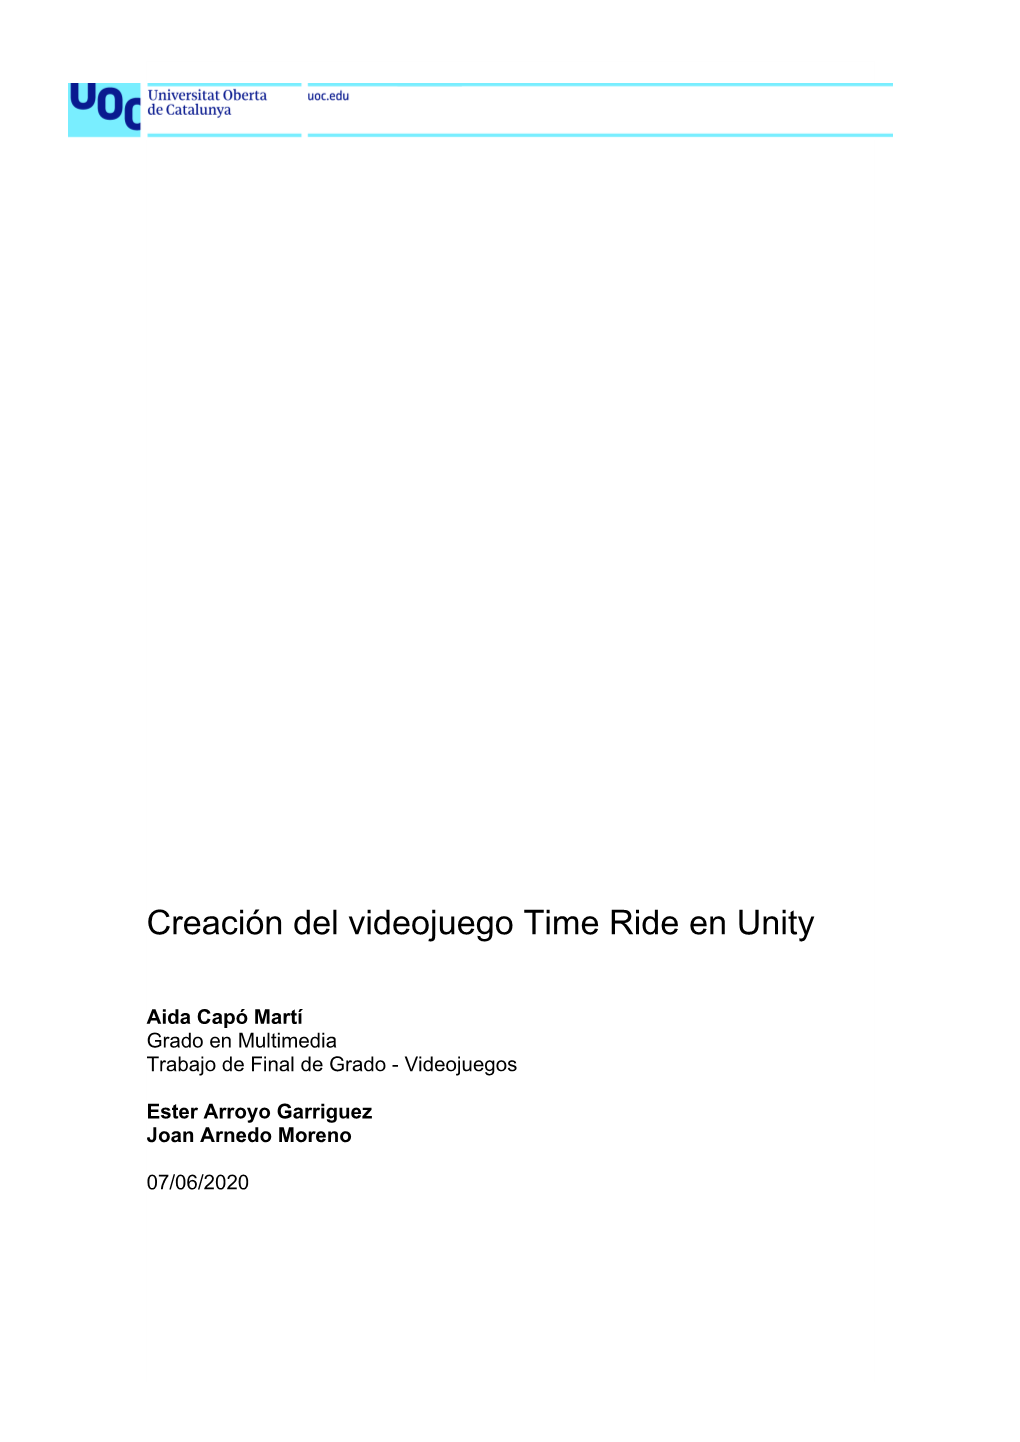 Creación Del Videojuego Time Ride En Unity